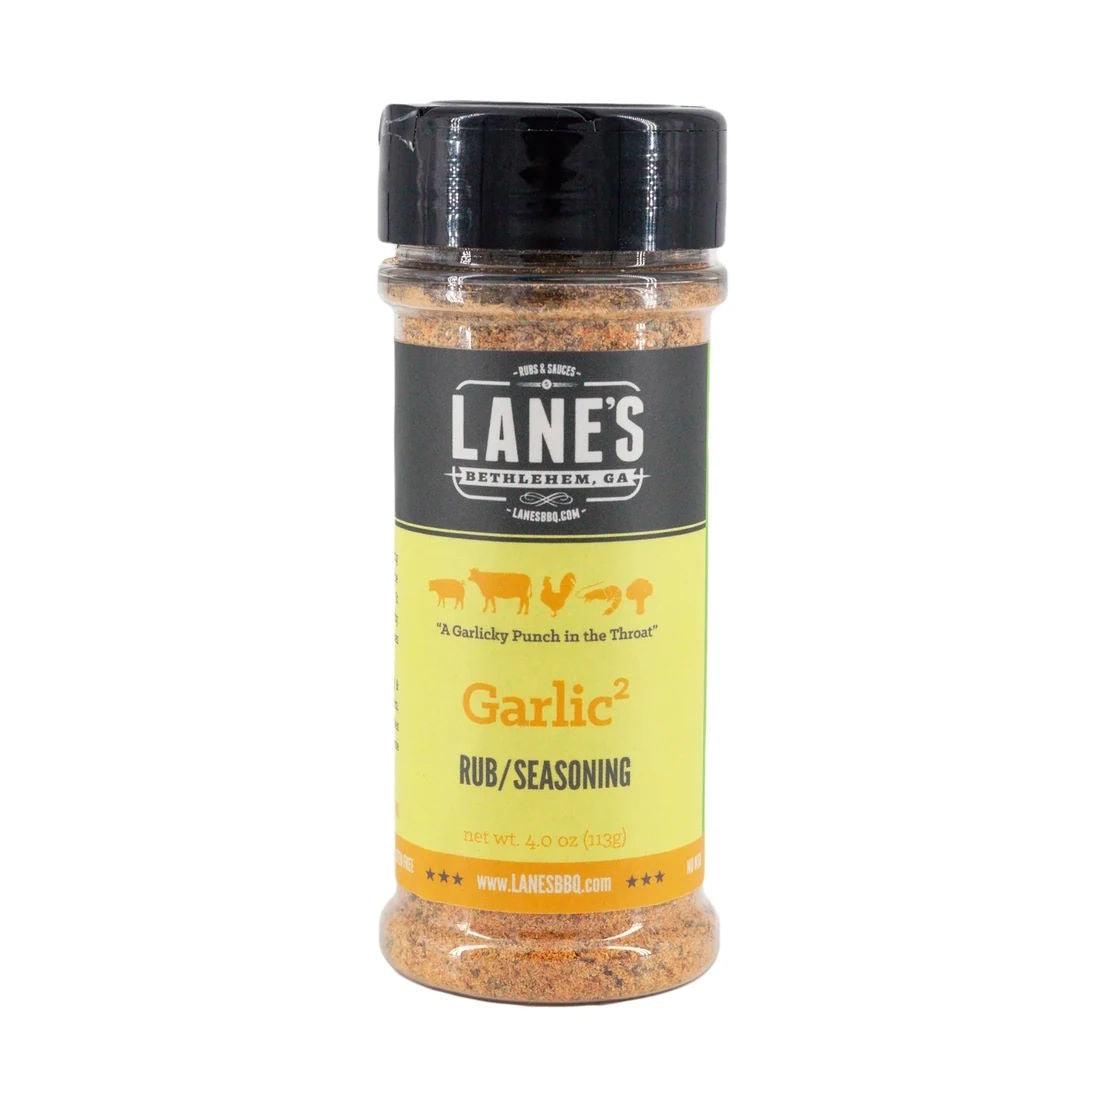 Lane's BBQ Garlic2 Rub Seasoning 113g - BBQ Land